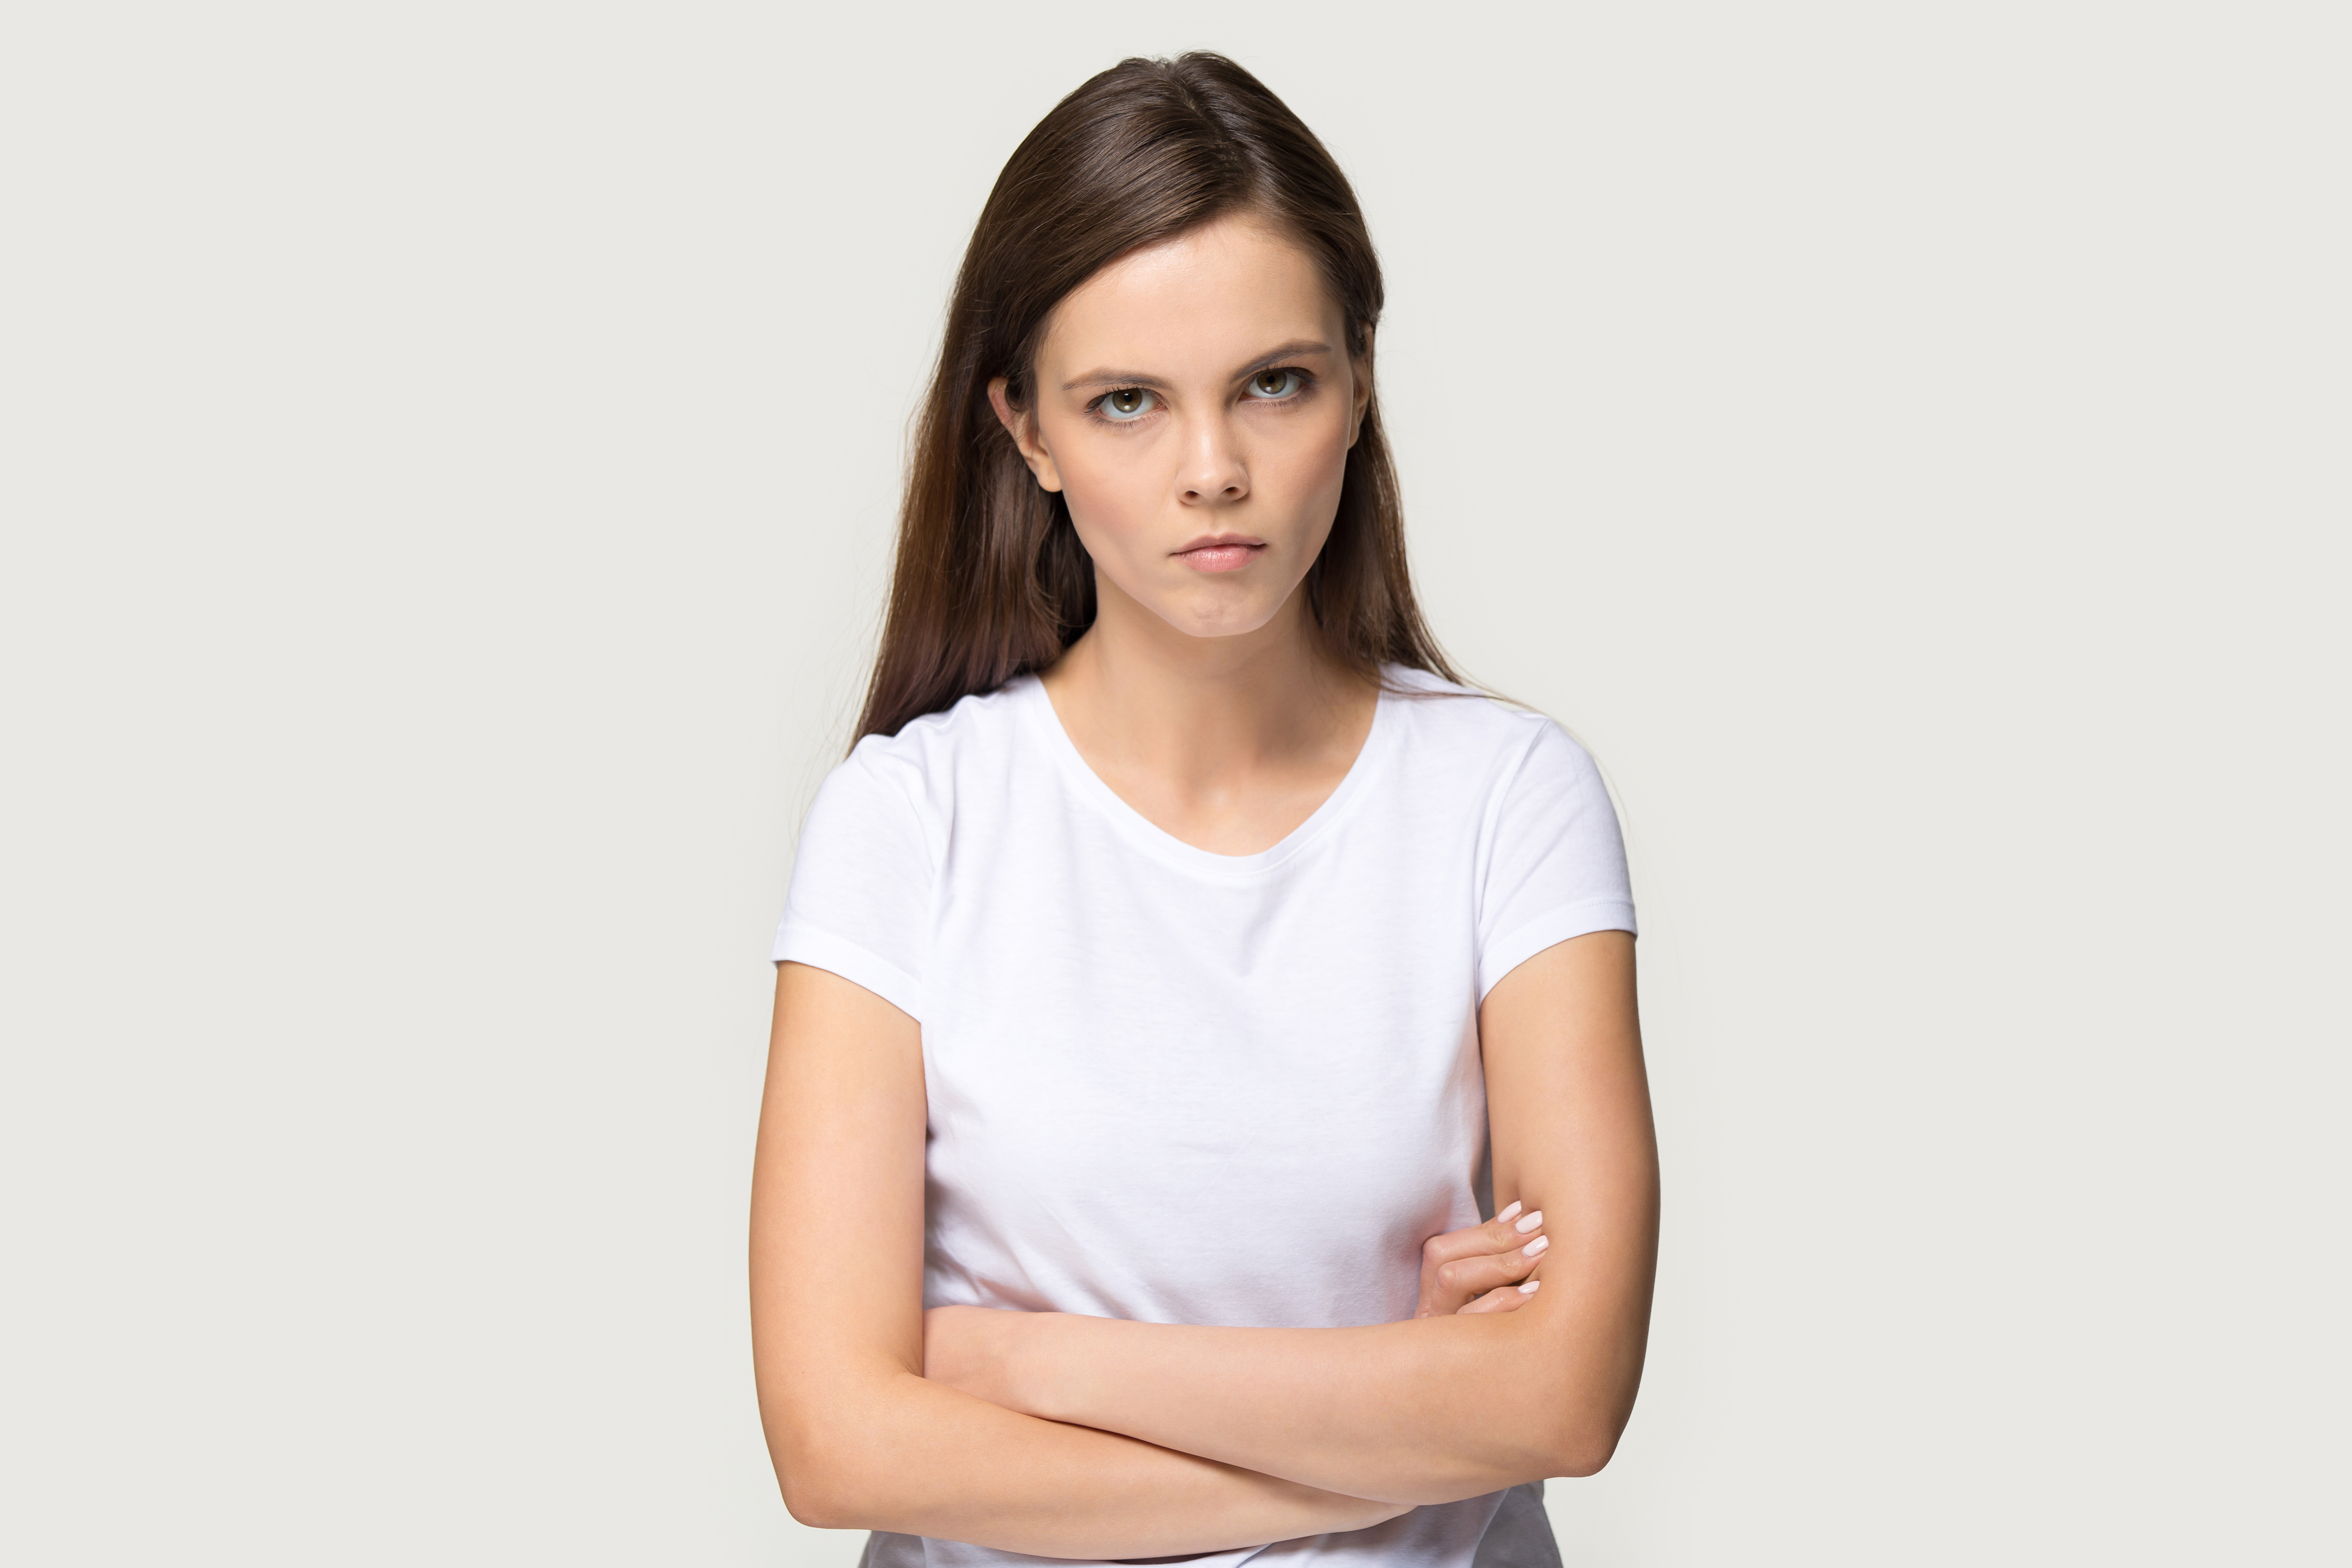 Una mujer joven con aspecto escéptico | Foto: Shutterstock